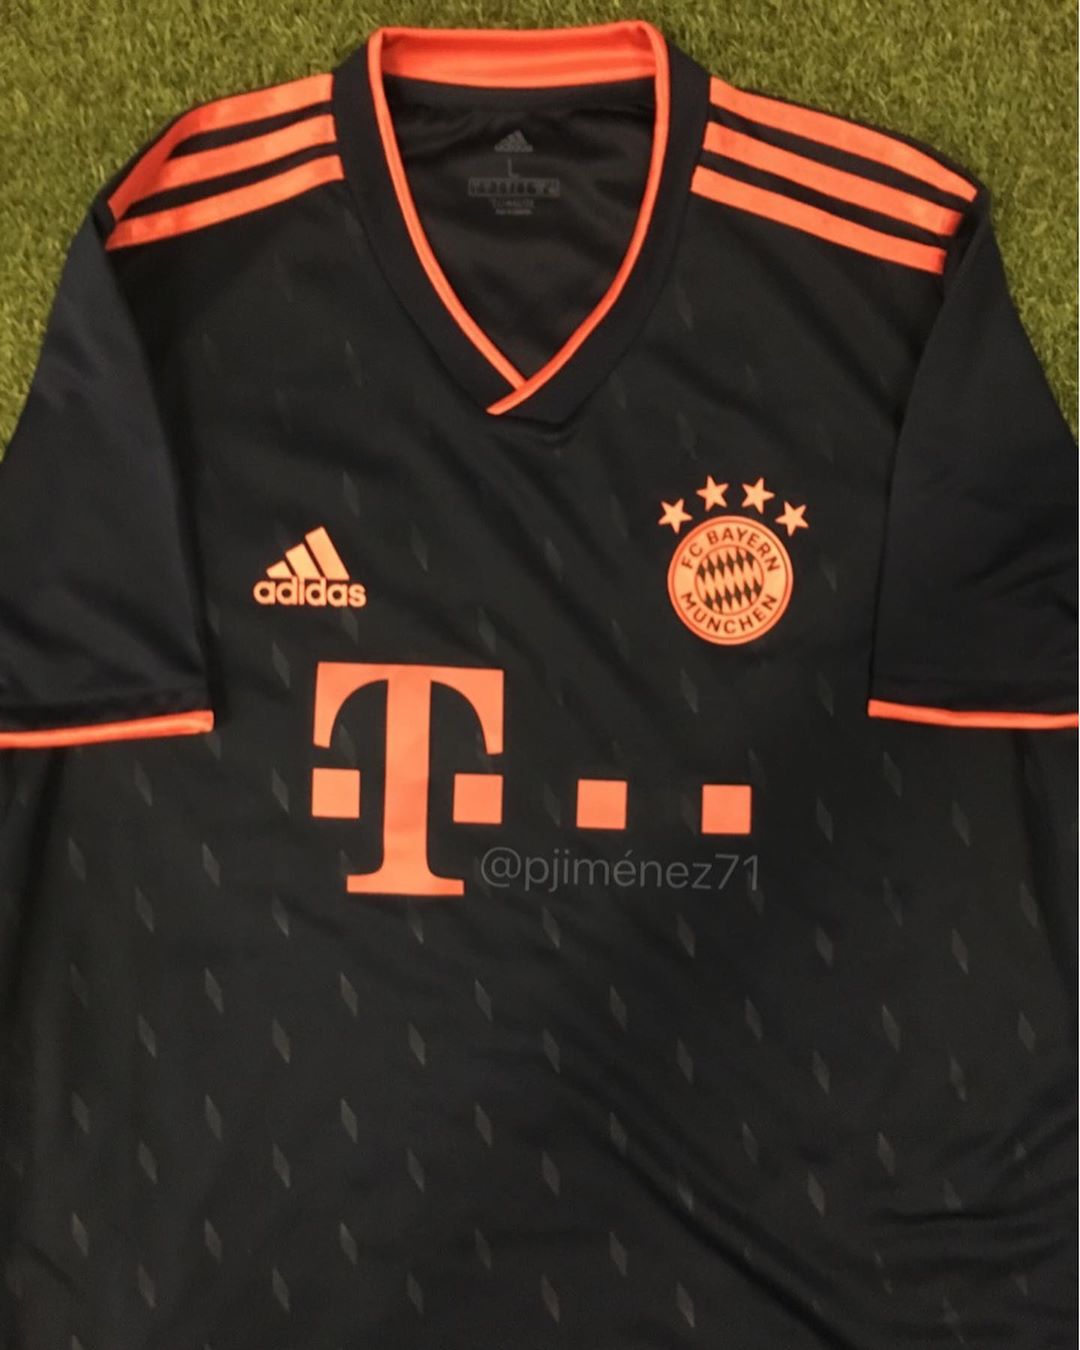 Bayern Munich 2019-20 Third Kit LEAKED